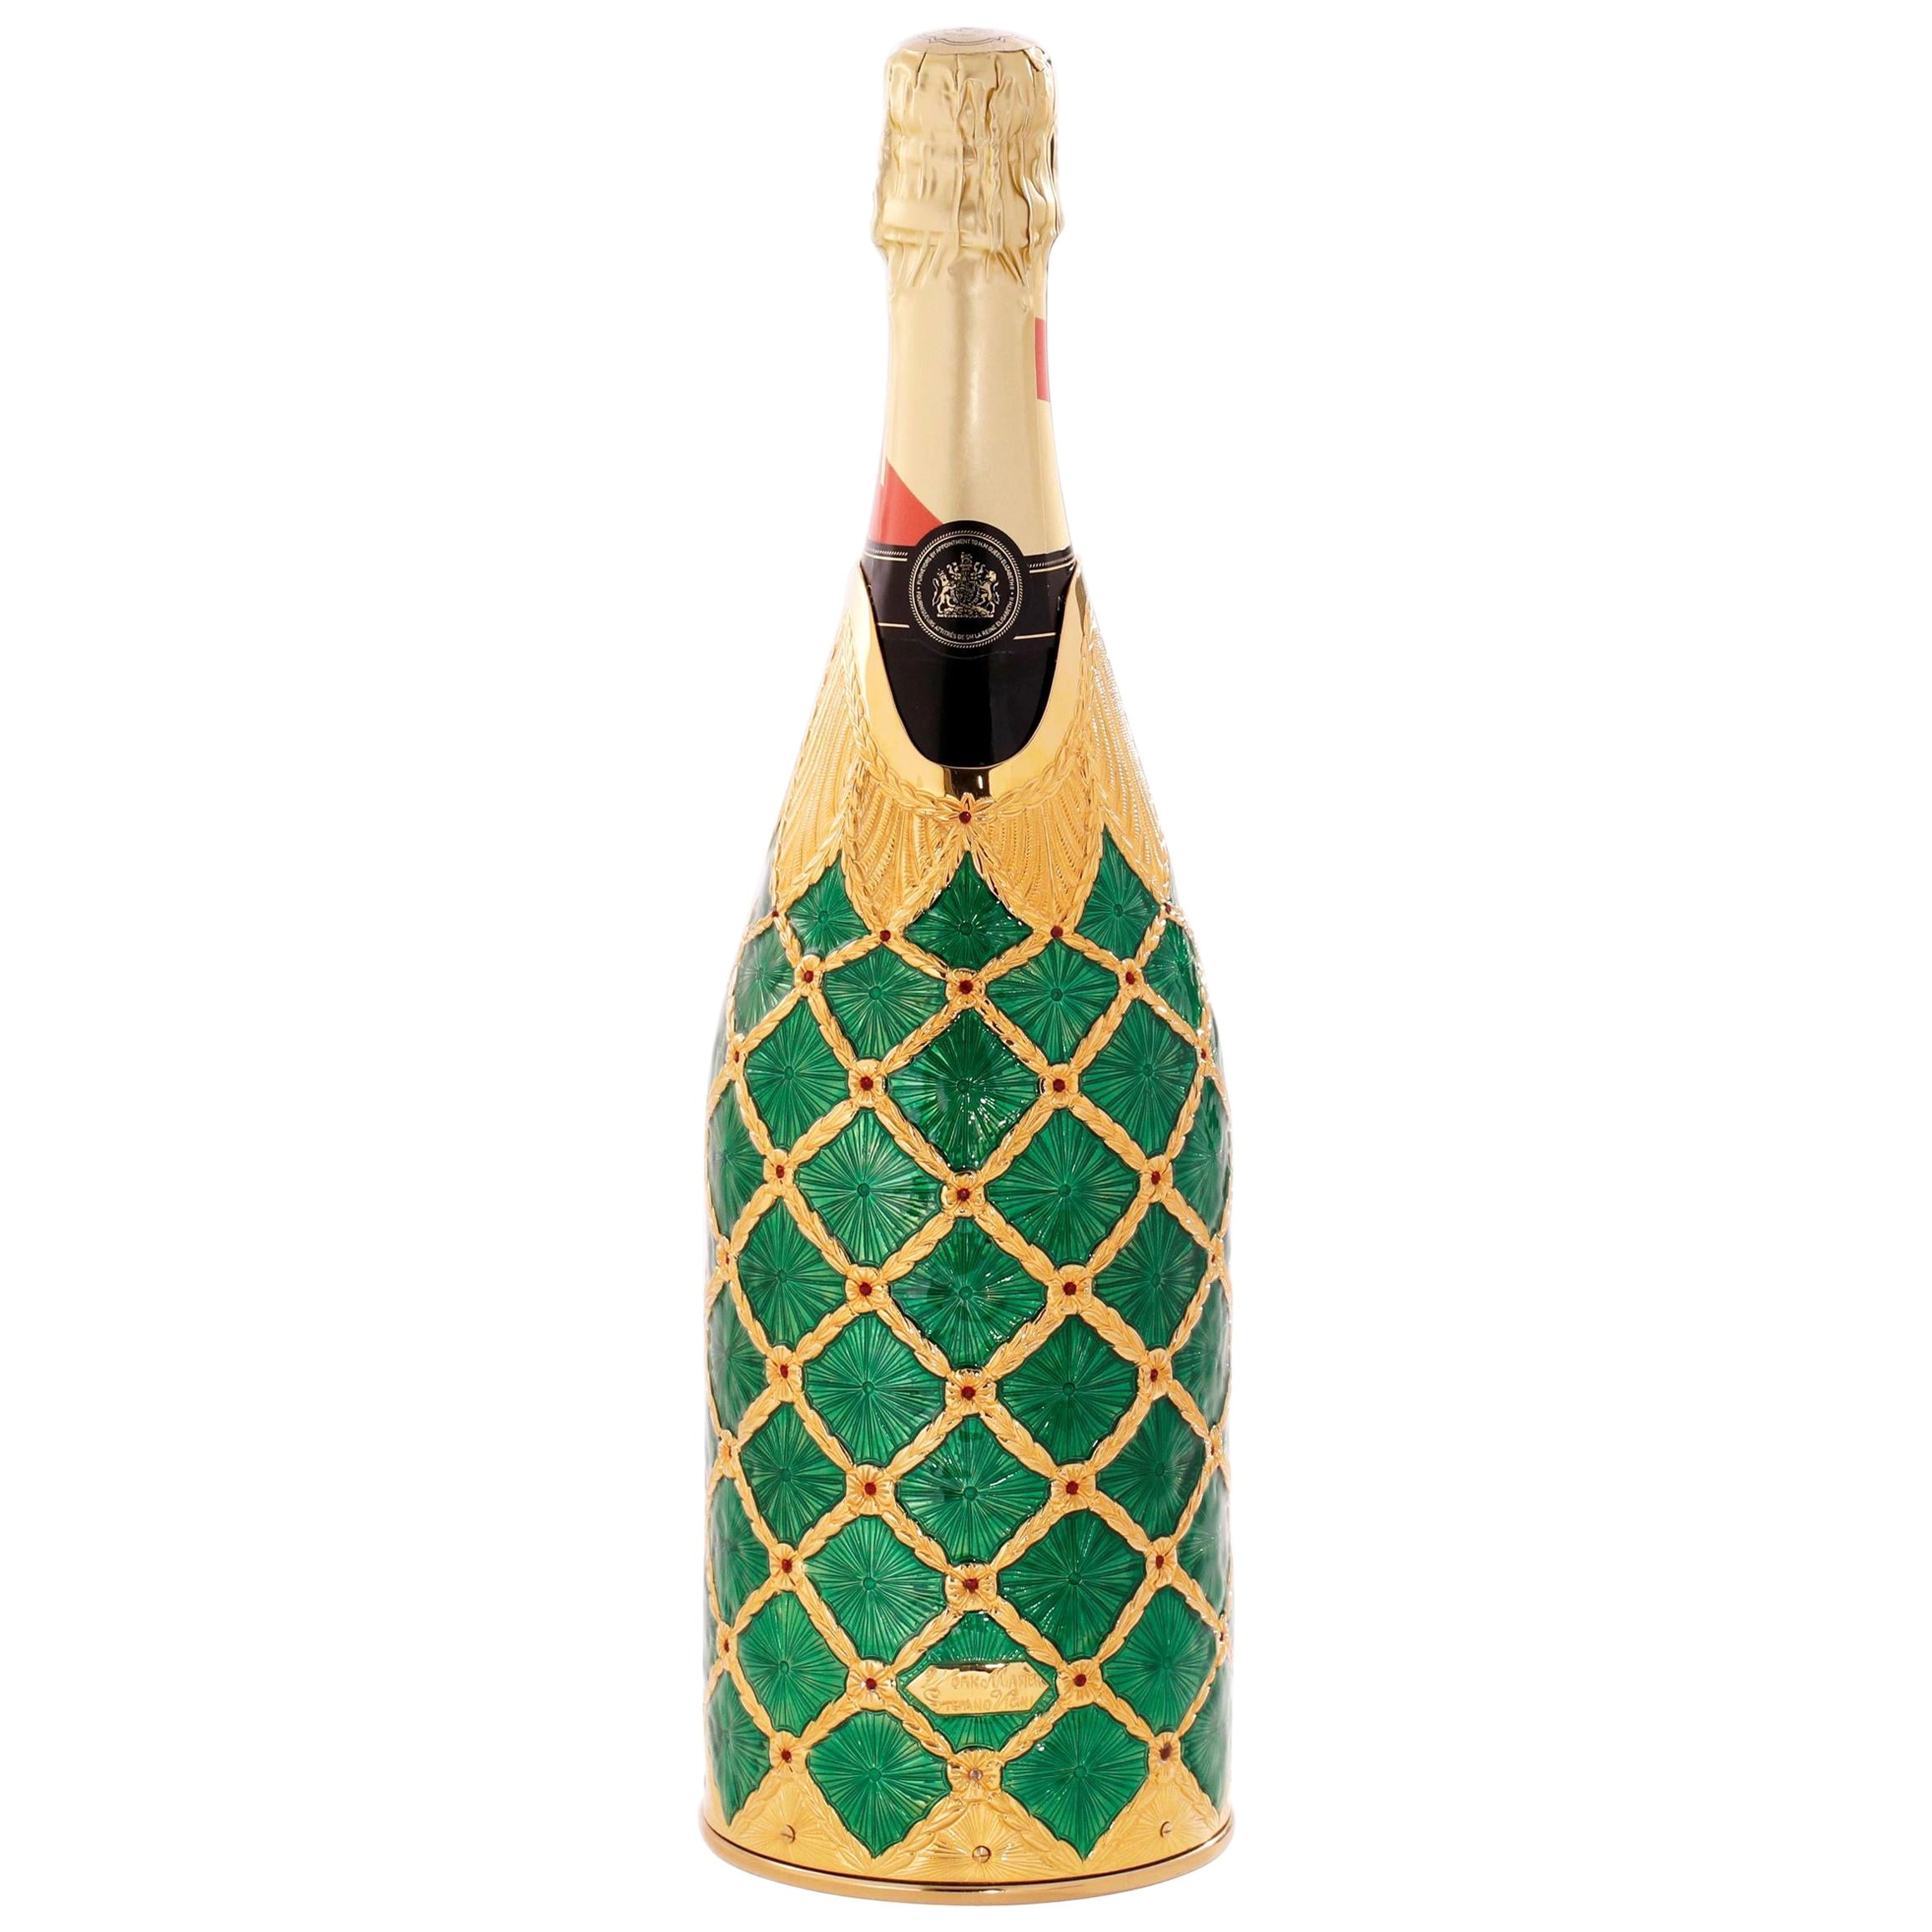 Champagnerfarbener Deckel aus massivem reinen Silber, Smaragd, 2020, Italien